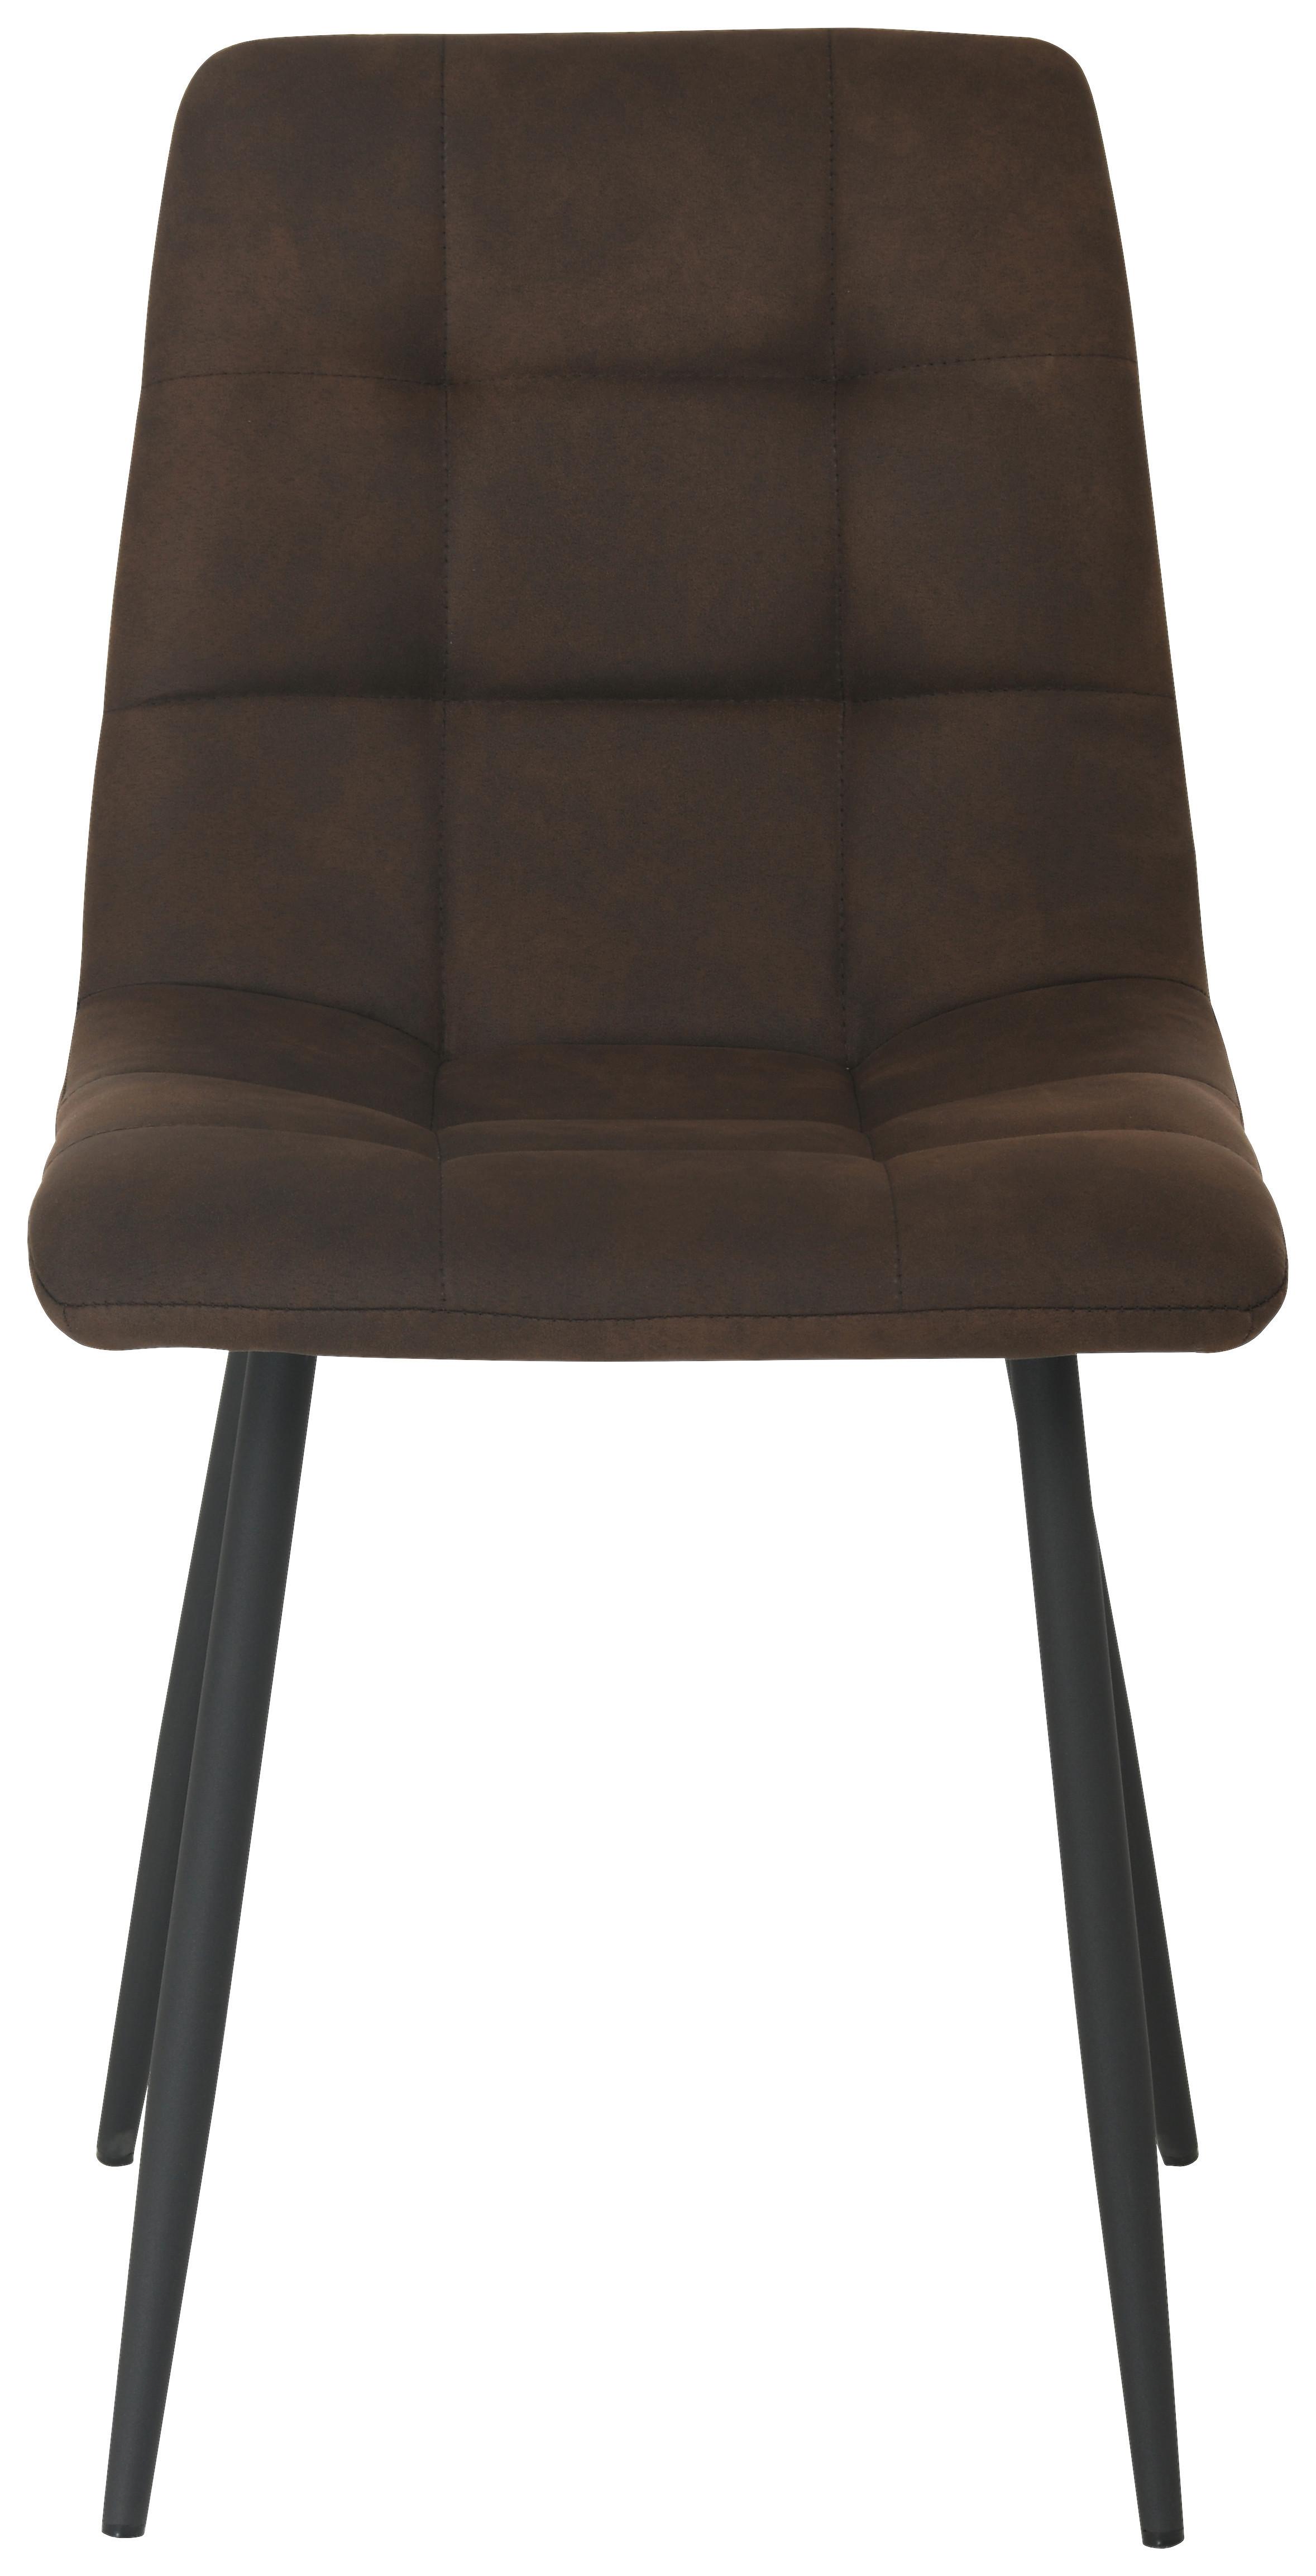 Četveronožna Stolica Zürs - smeđa/crna, Konventionell, drvo/metal (45/88cm)